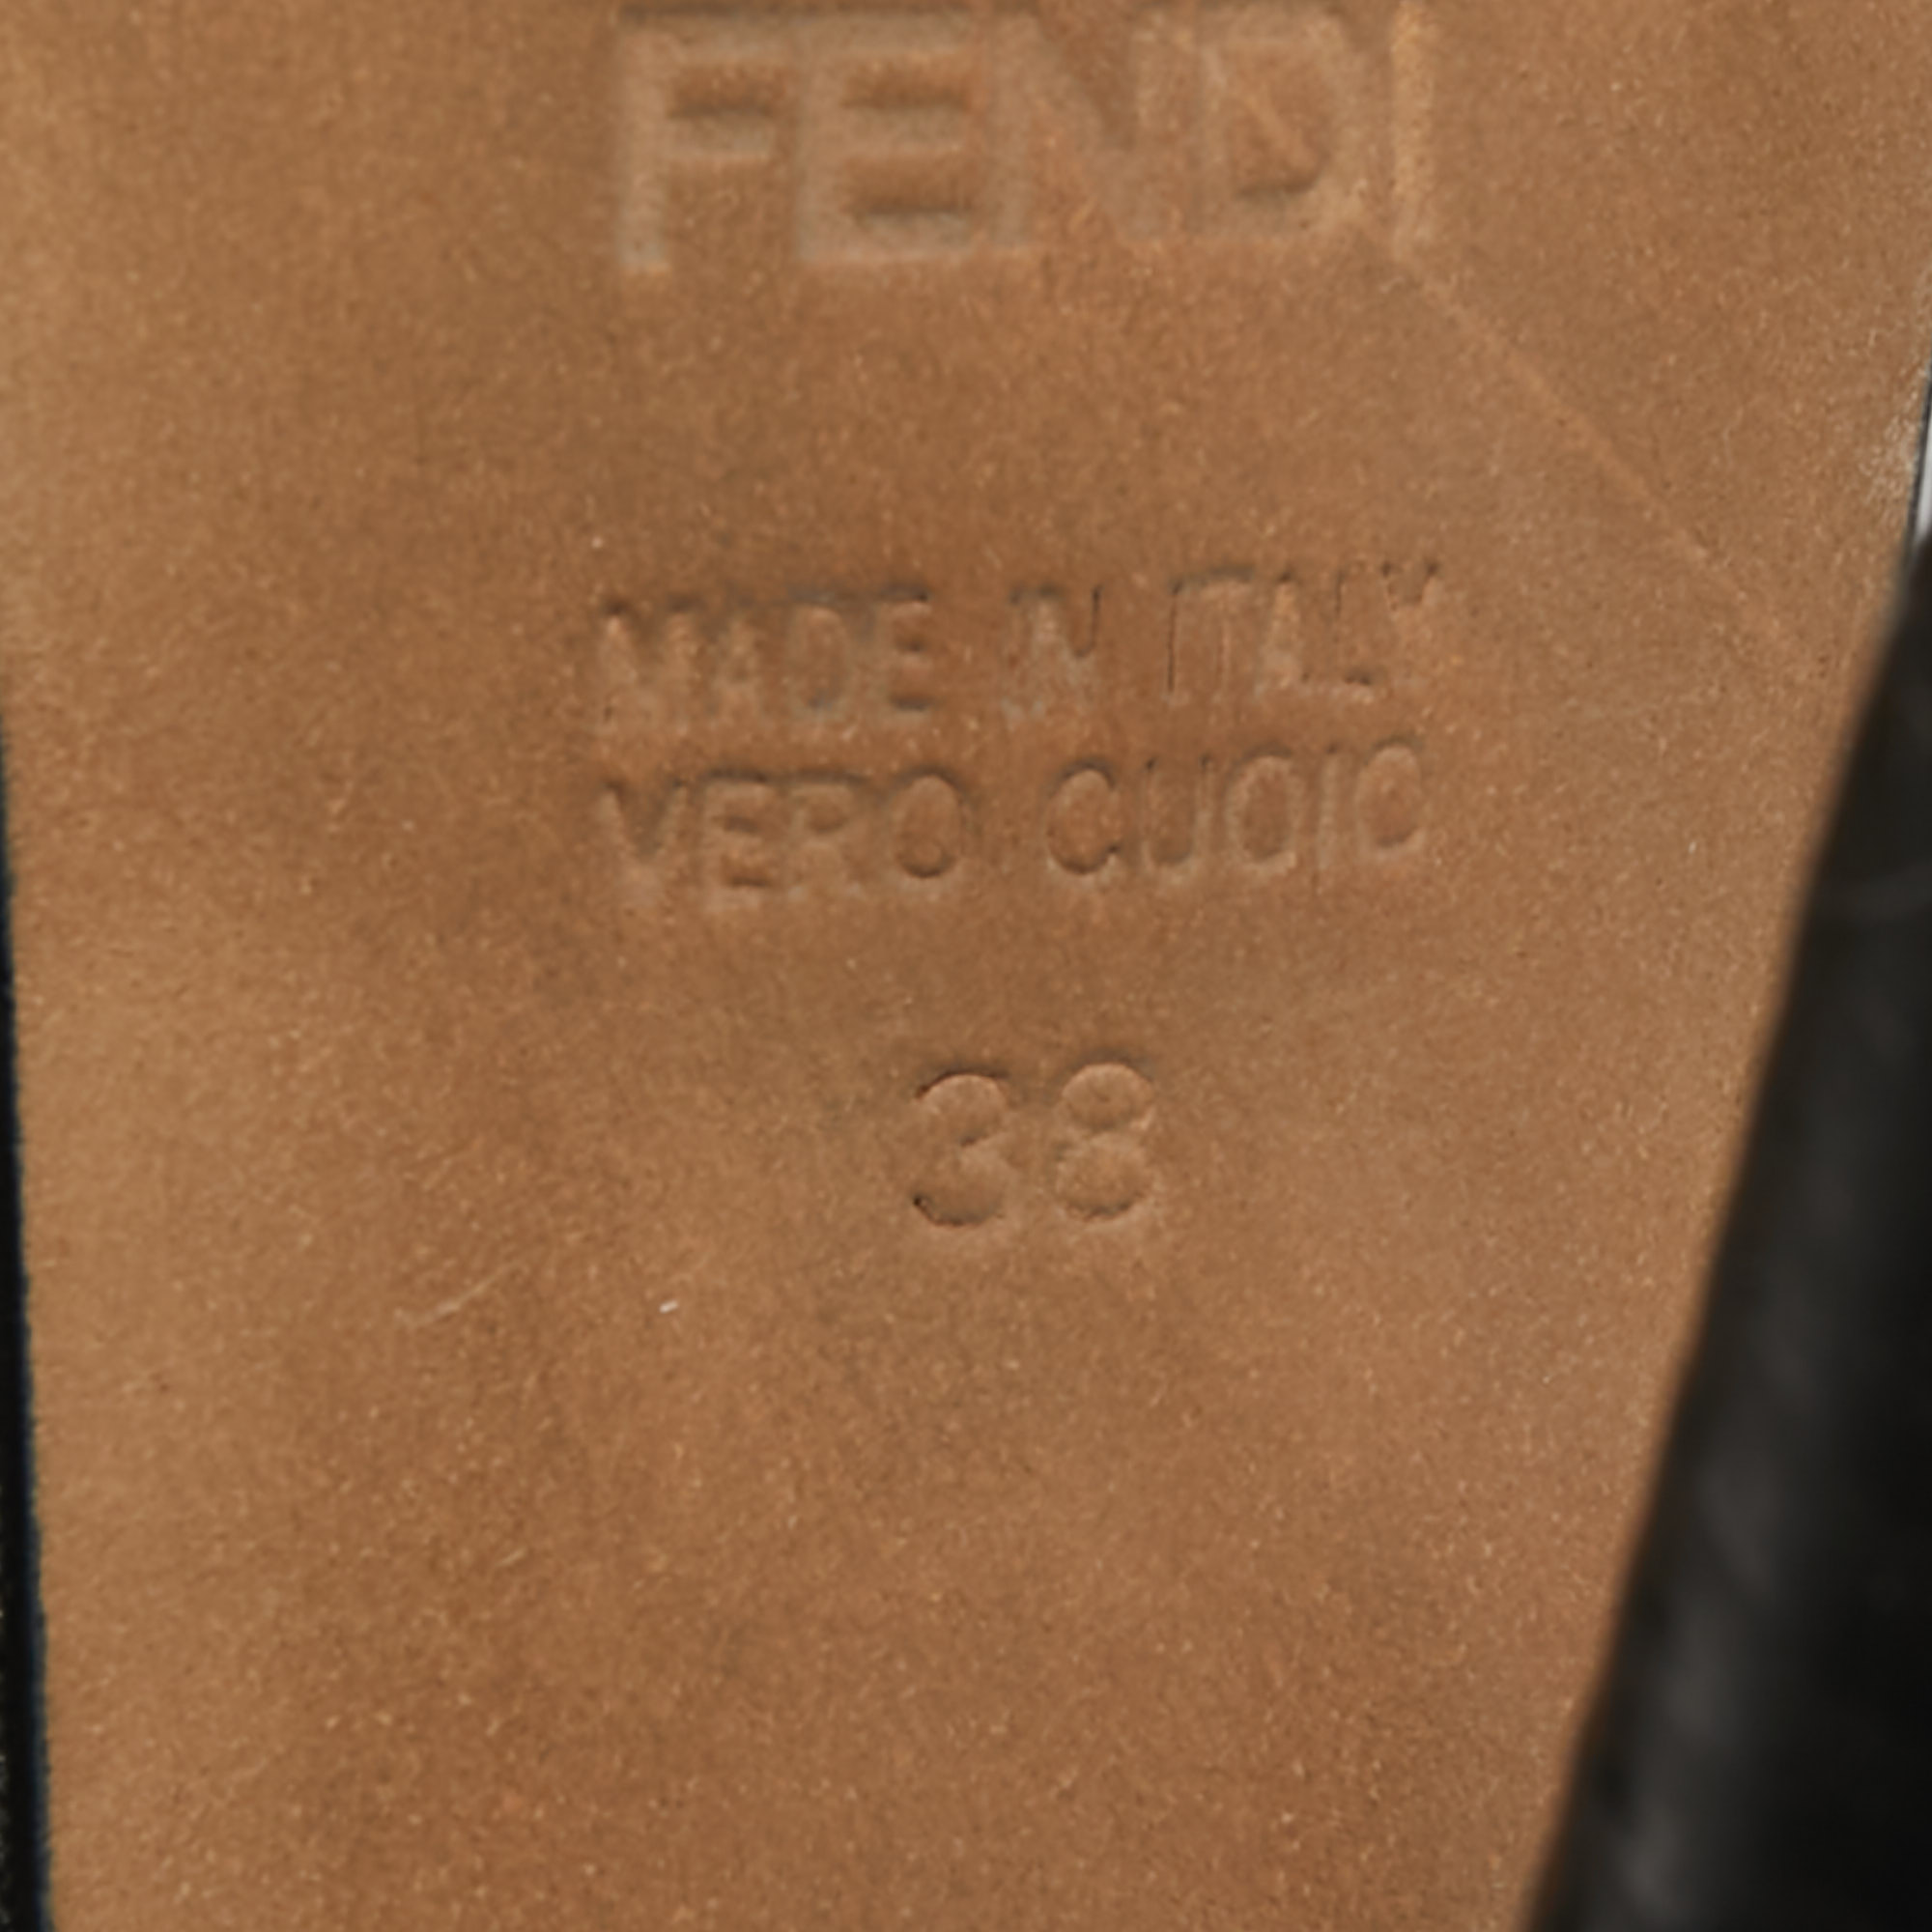 Fendi Black Leather Fendista Platform Pumps Size 38